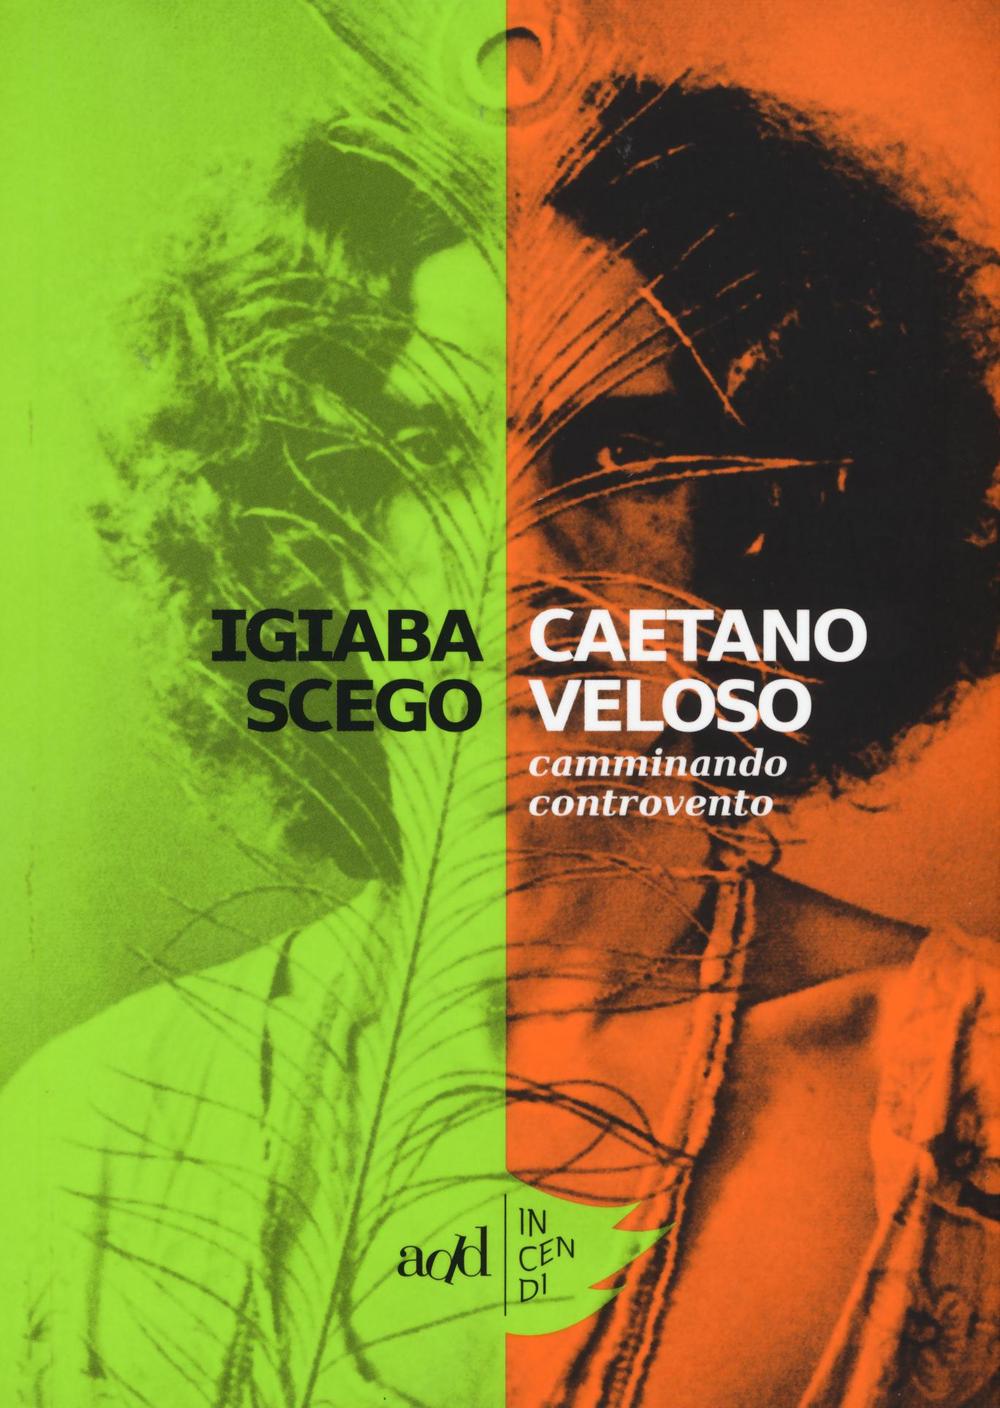 Kniha Caetano Veloso. Camminando controvento Igiaba Scego